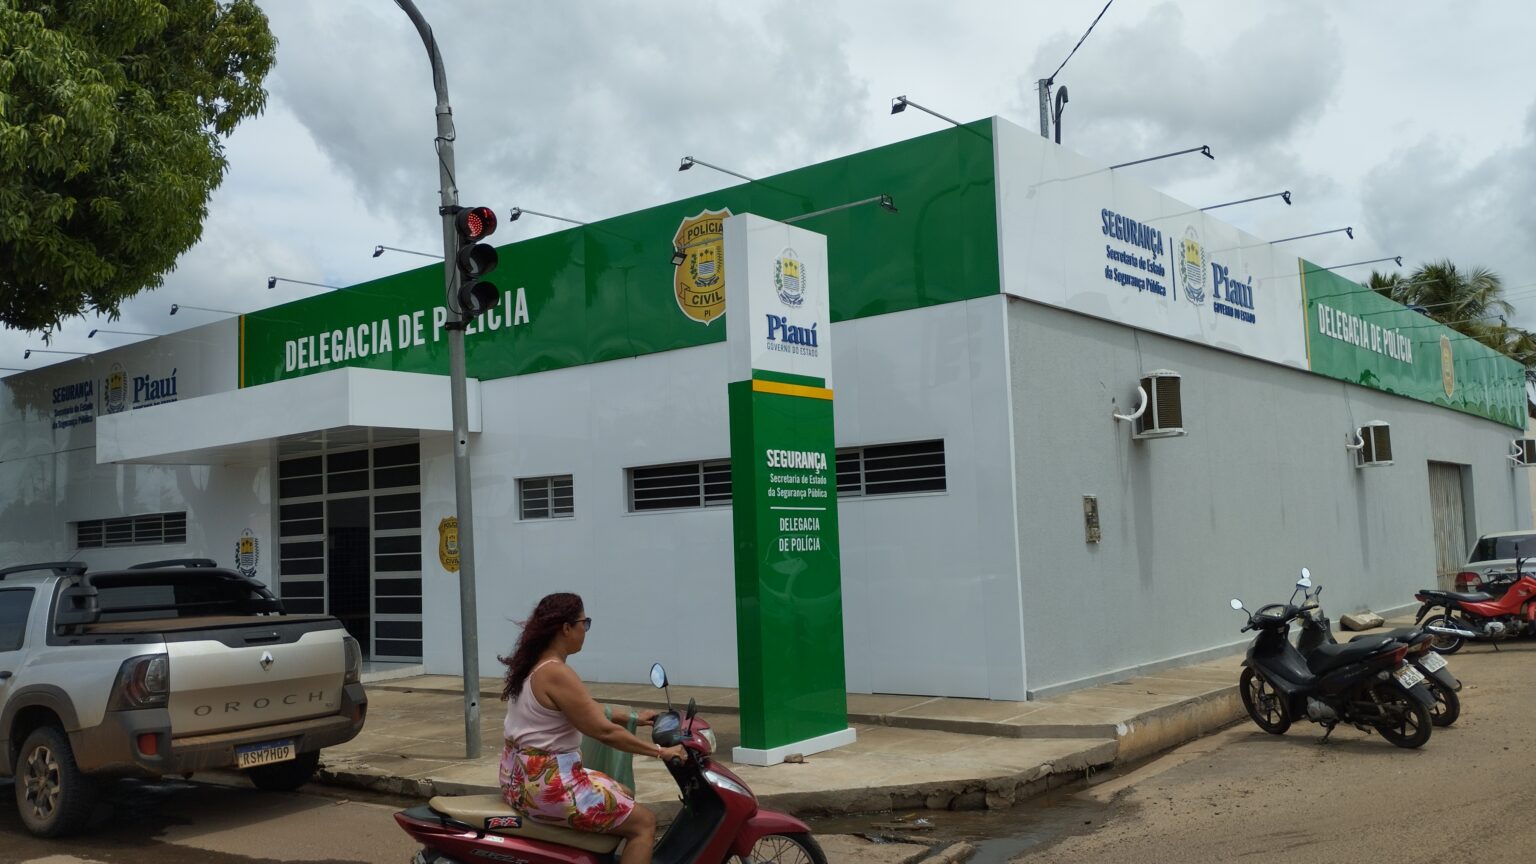 Escrivão da Polícia Civil do Piauí é suspenso por usar viatura para frequentar o "Cabaré da Elizabete"